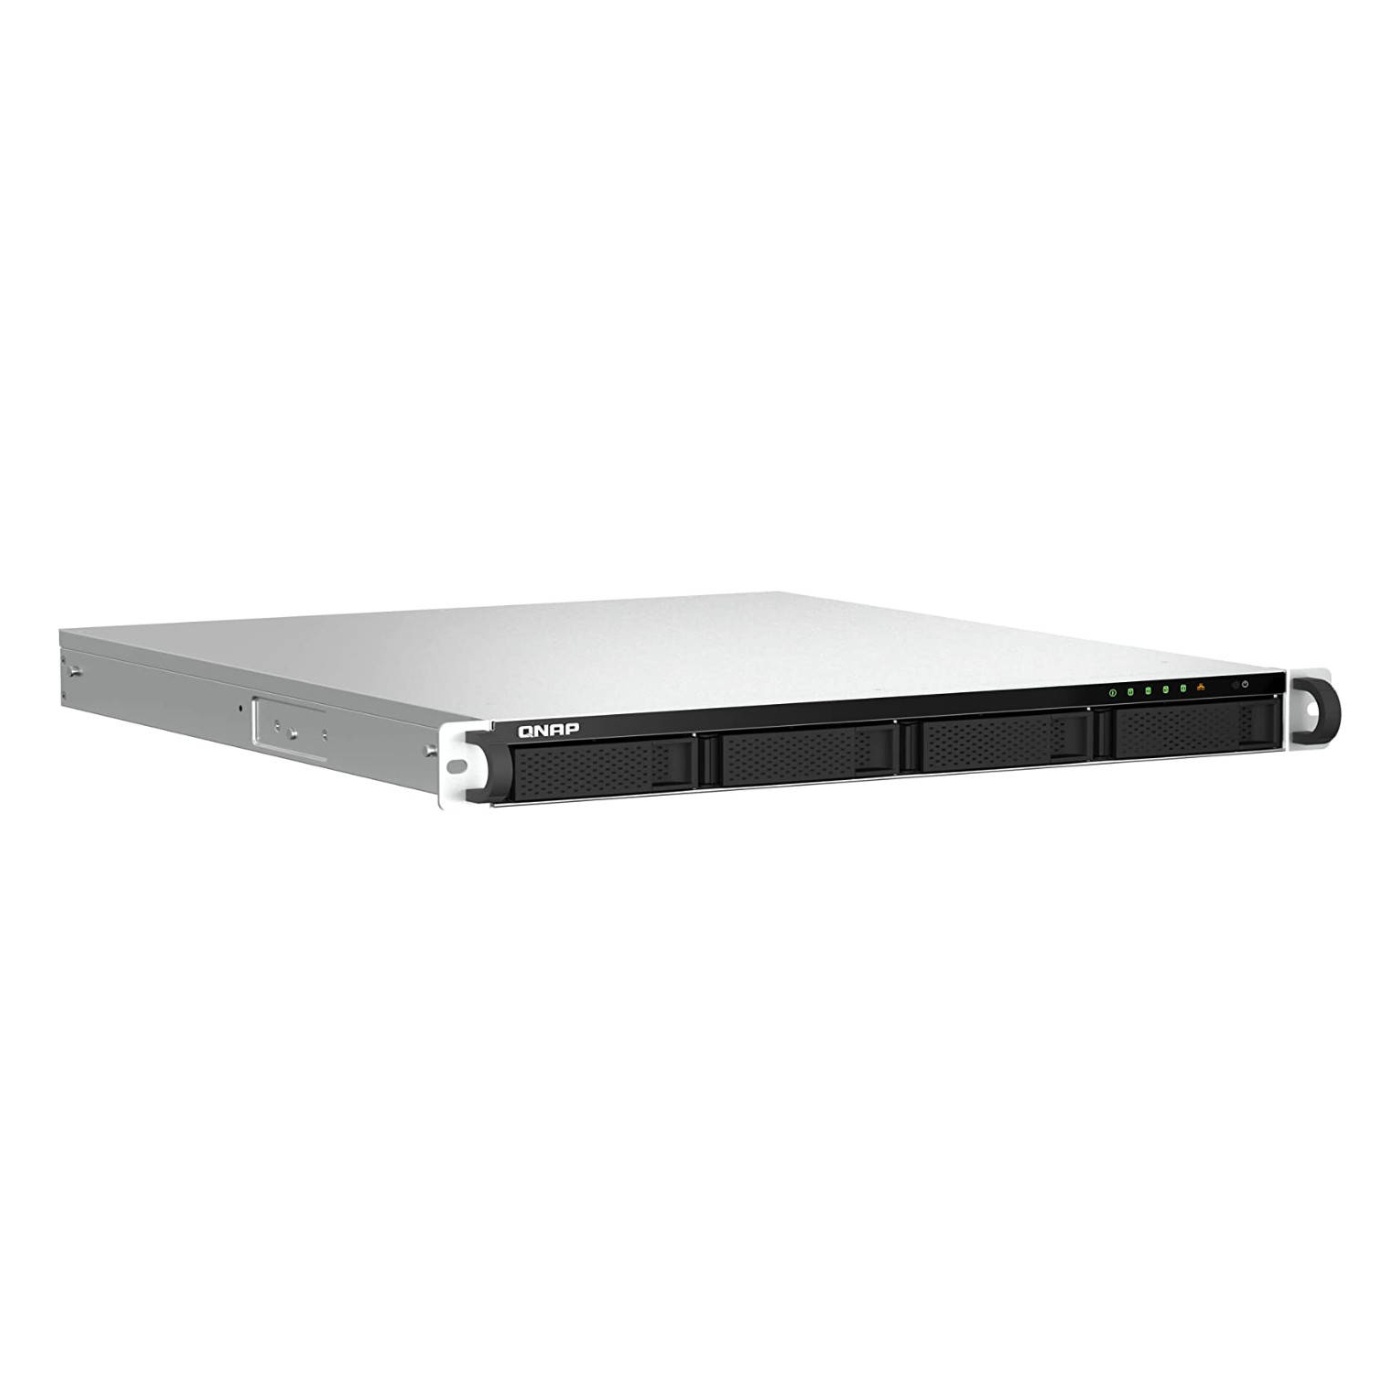 Серверное сетевое хранилище QNAP TS-464U-RP, 4 отсека, 4 ГБ, без дисков, черный сетевое хранилище без дисков qnap ts 464u rp 8g